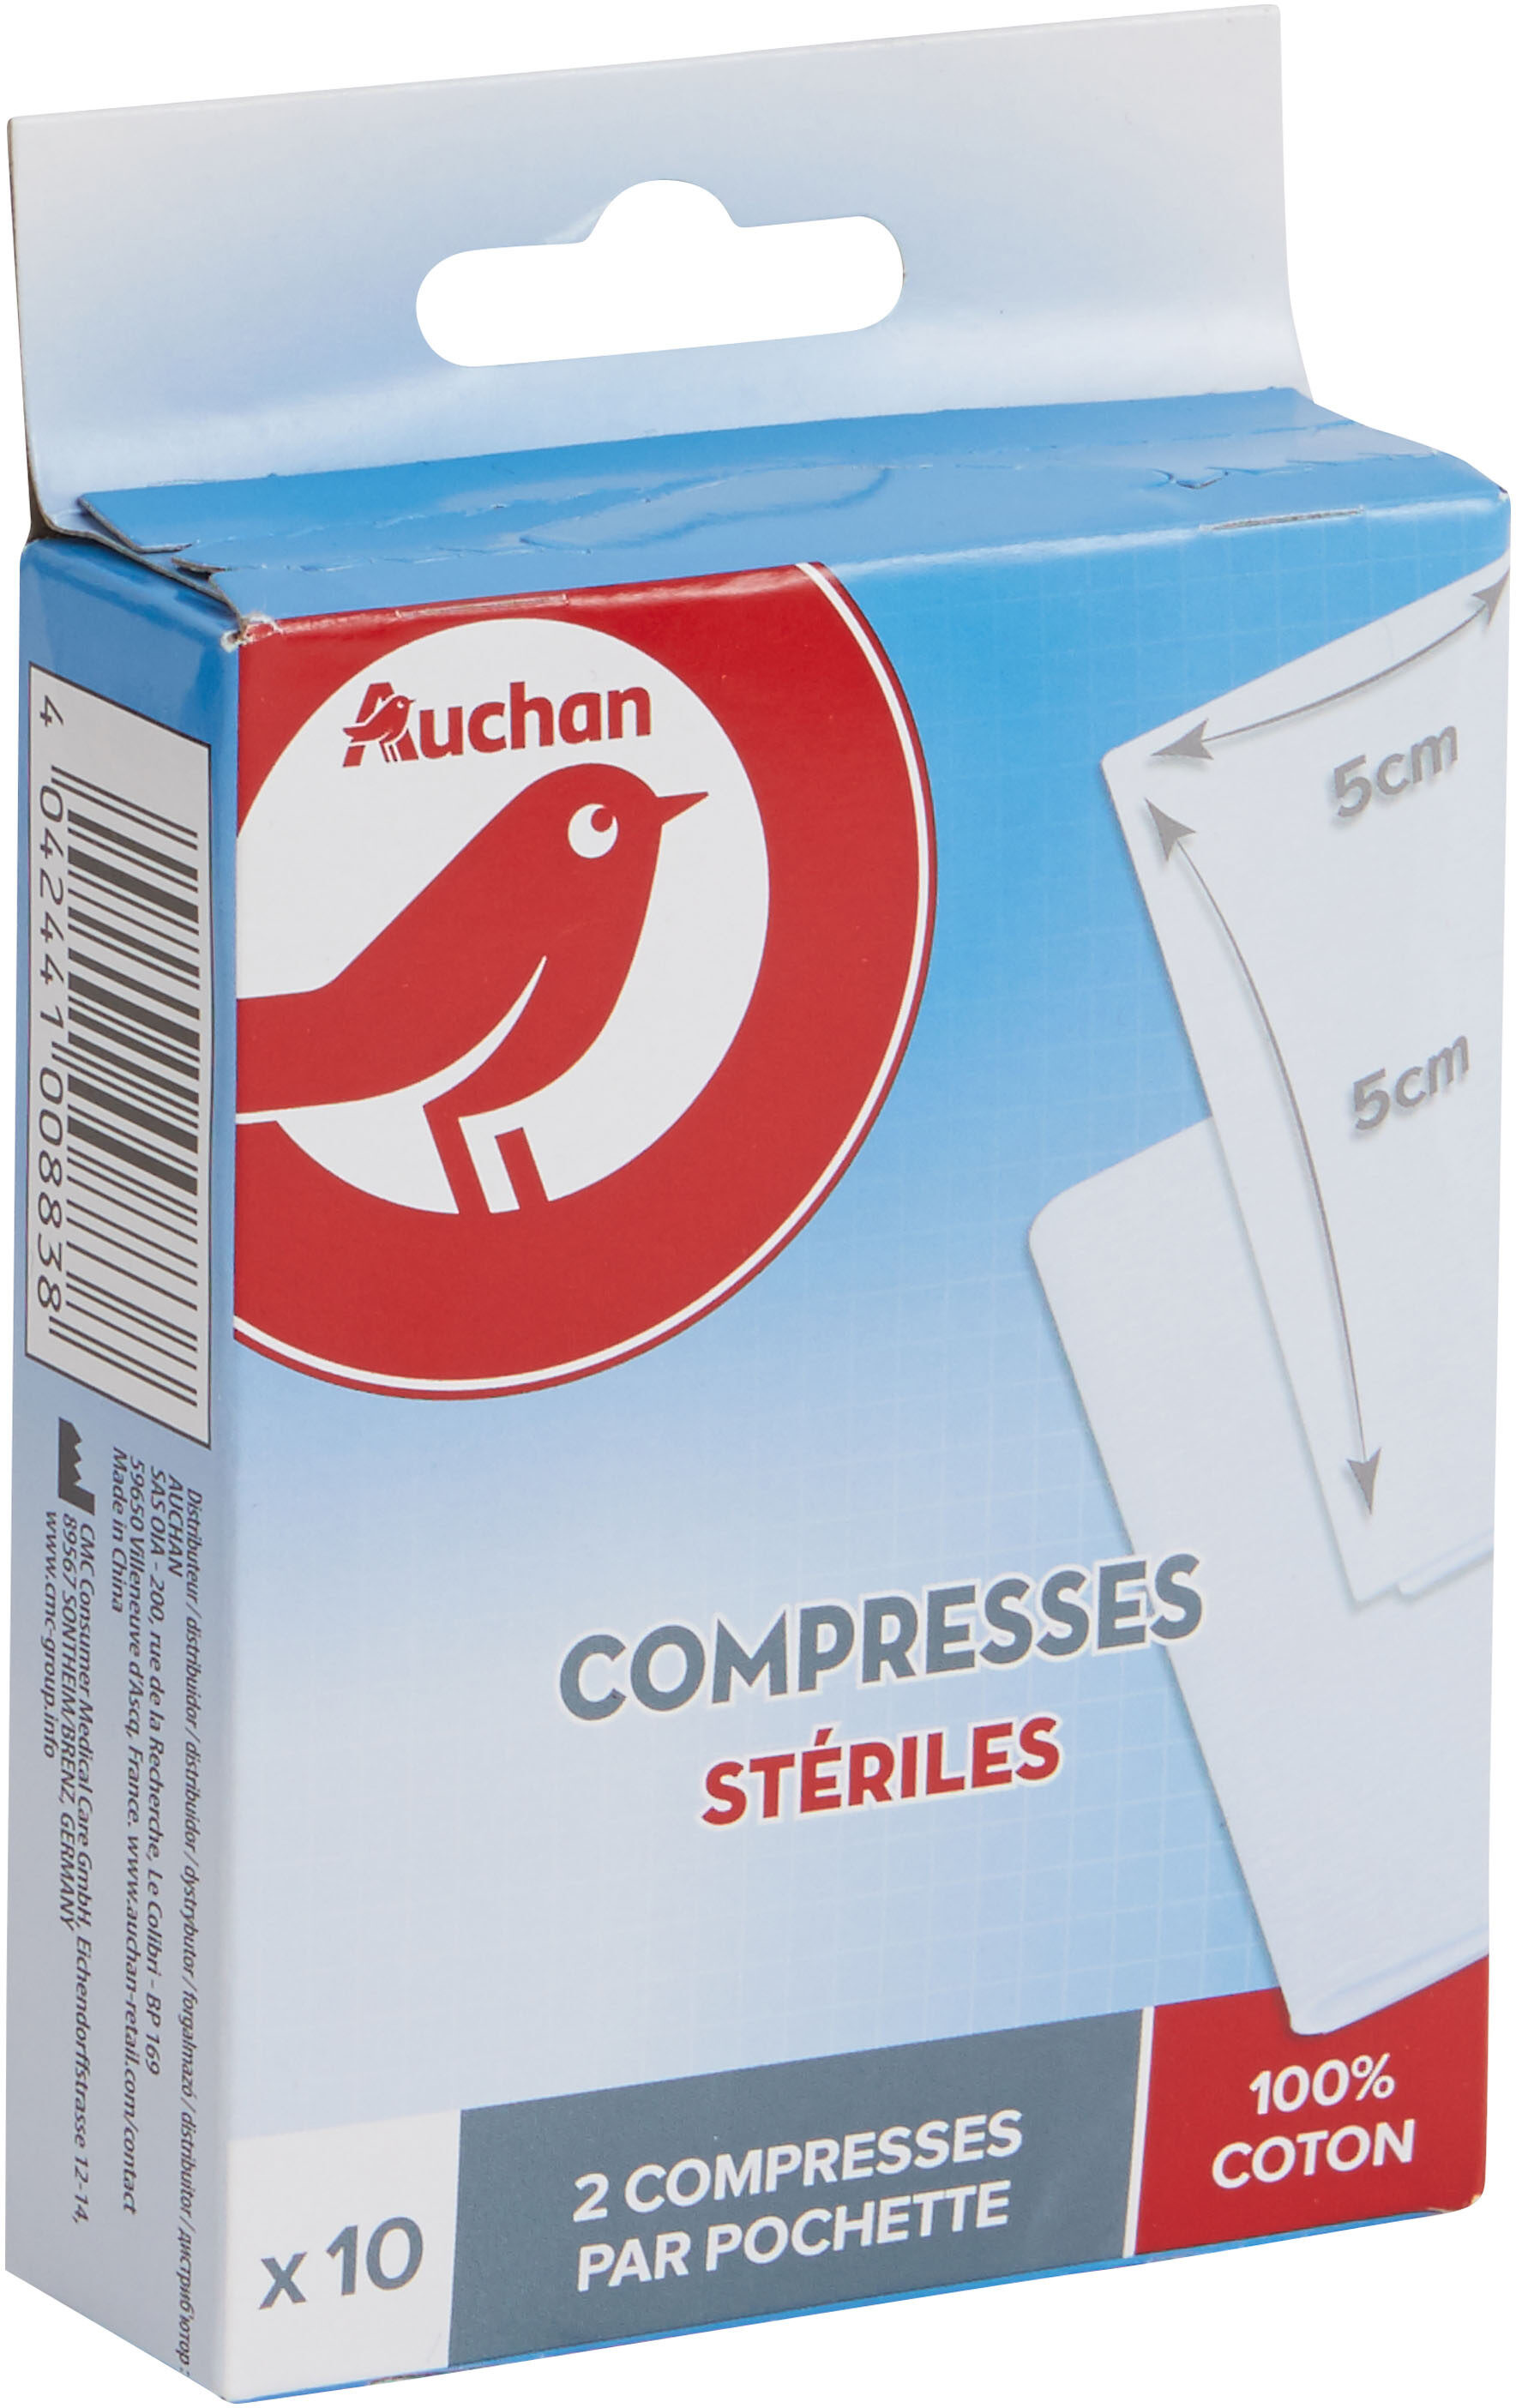 Compresses stériles - Product - fr